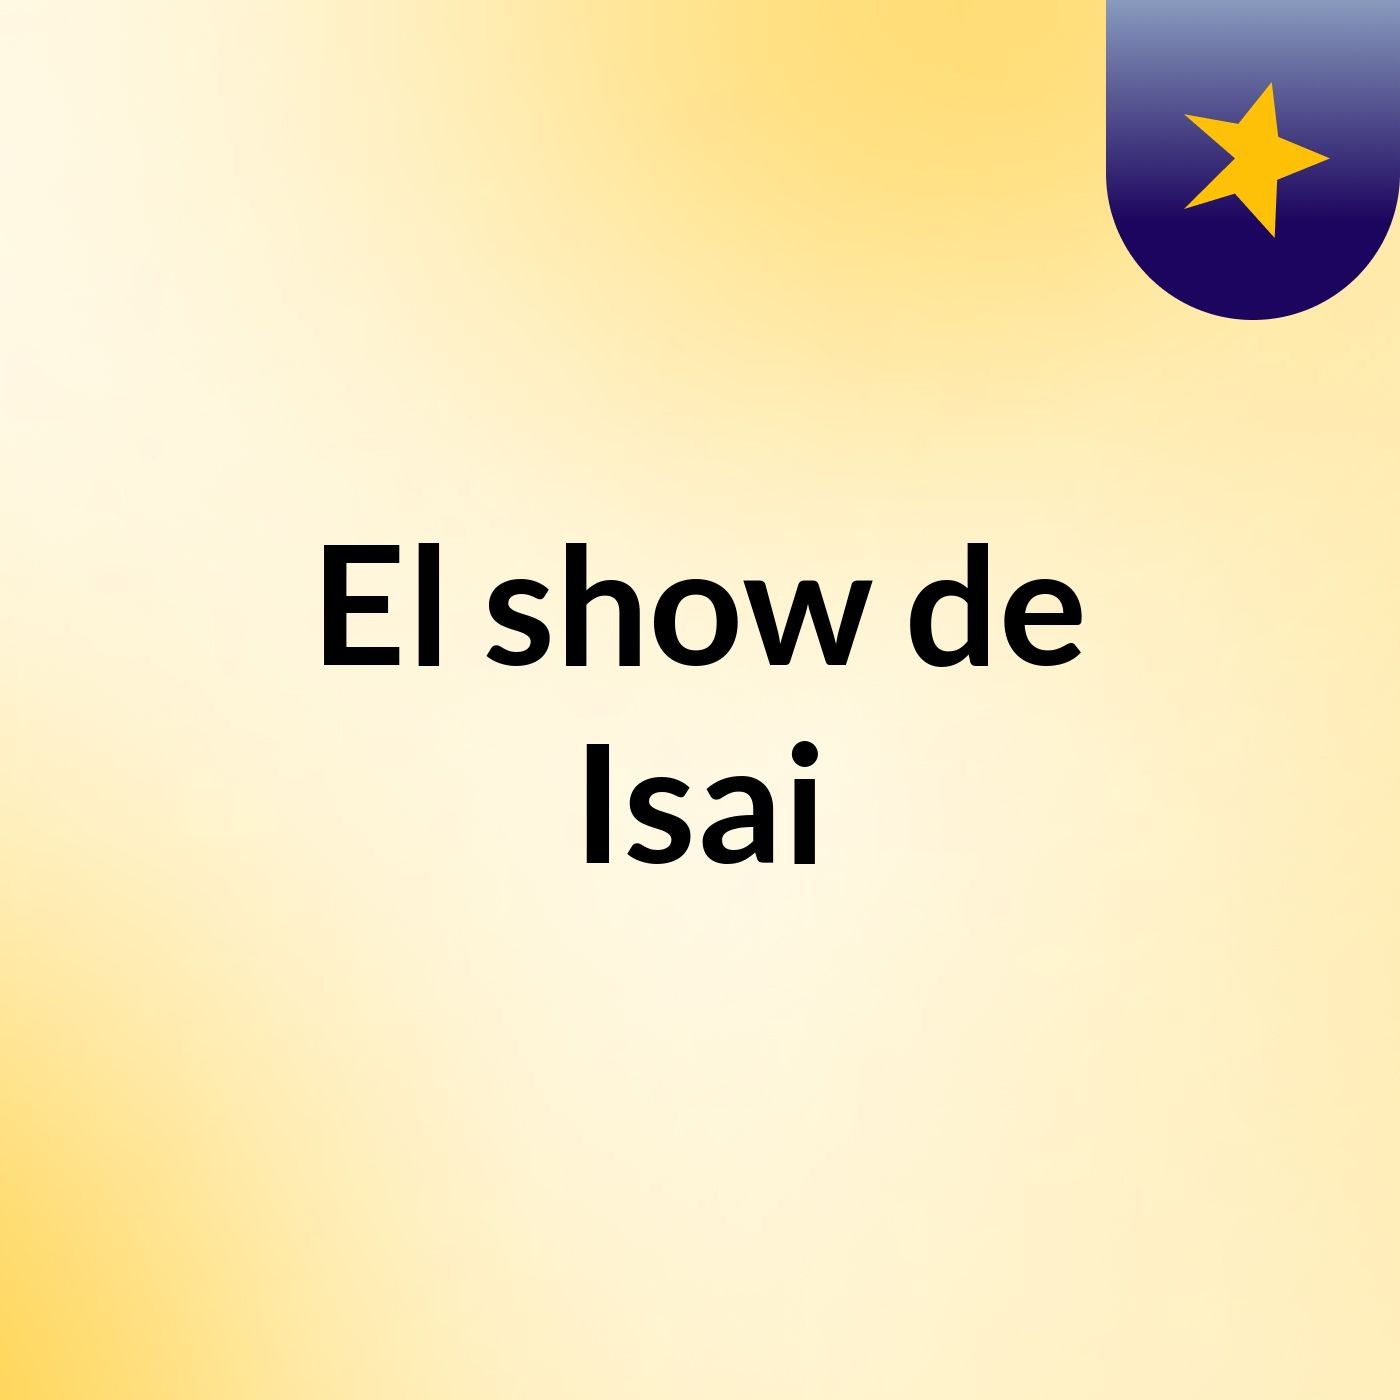 El show de Isai